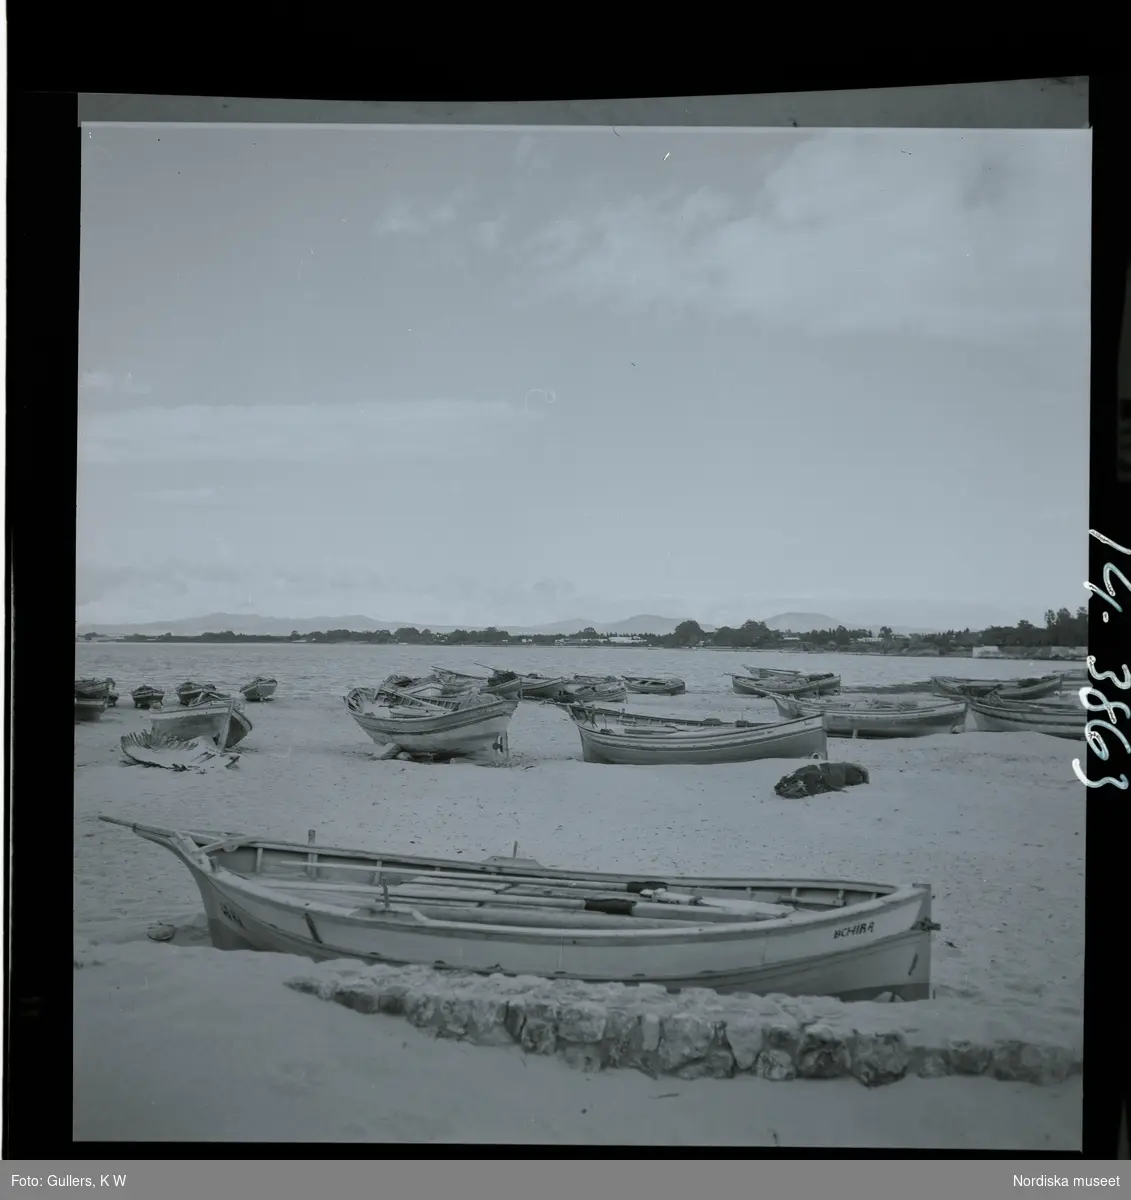 2791/1 Tunisien allmänt. Båtar på strand.